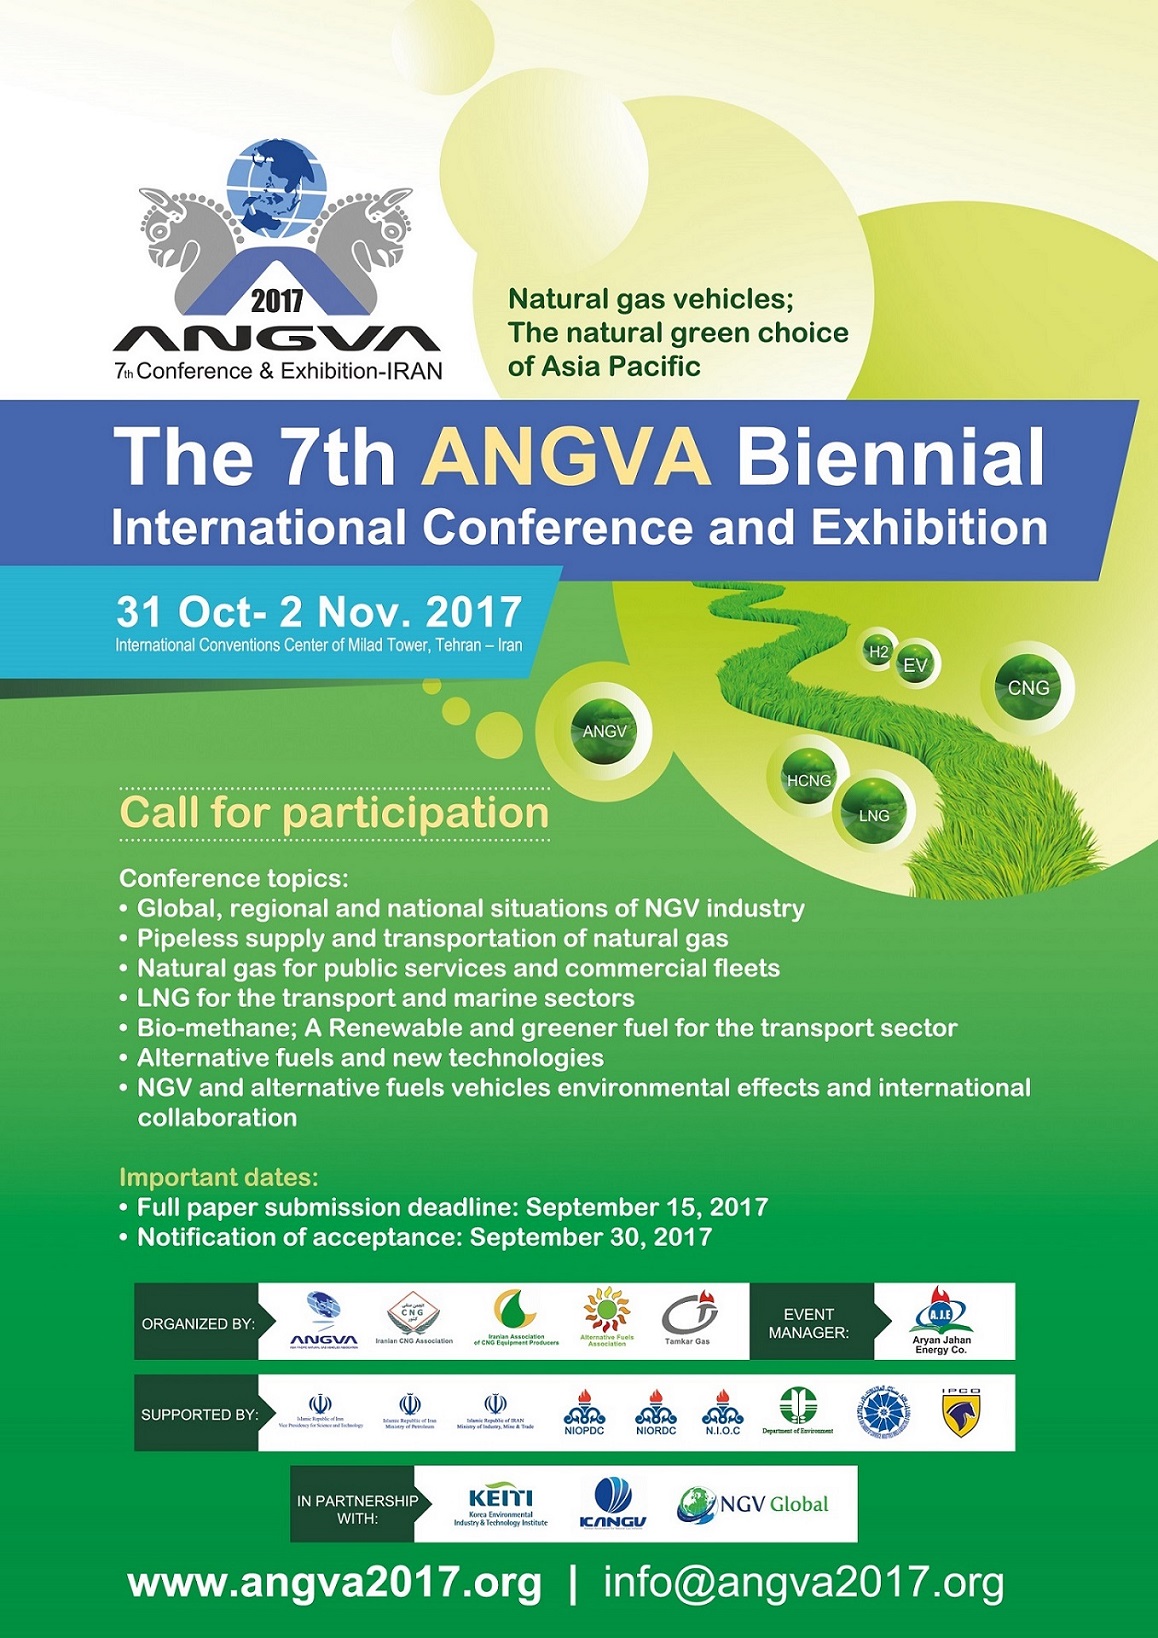 پوستر هفتمین نمایشگاه و کنفرانس بین المللی دوسالانه انجمن خودروهای گازسوز طبیعی آسیا و اقیانوسیه (ANGVA2017)